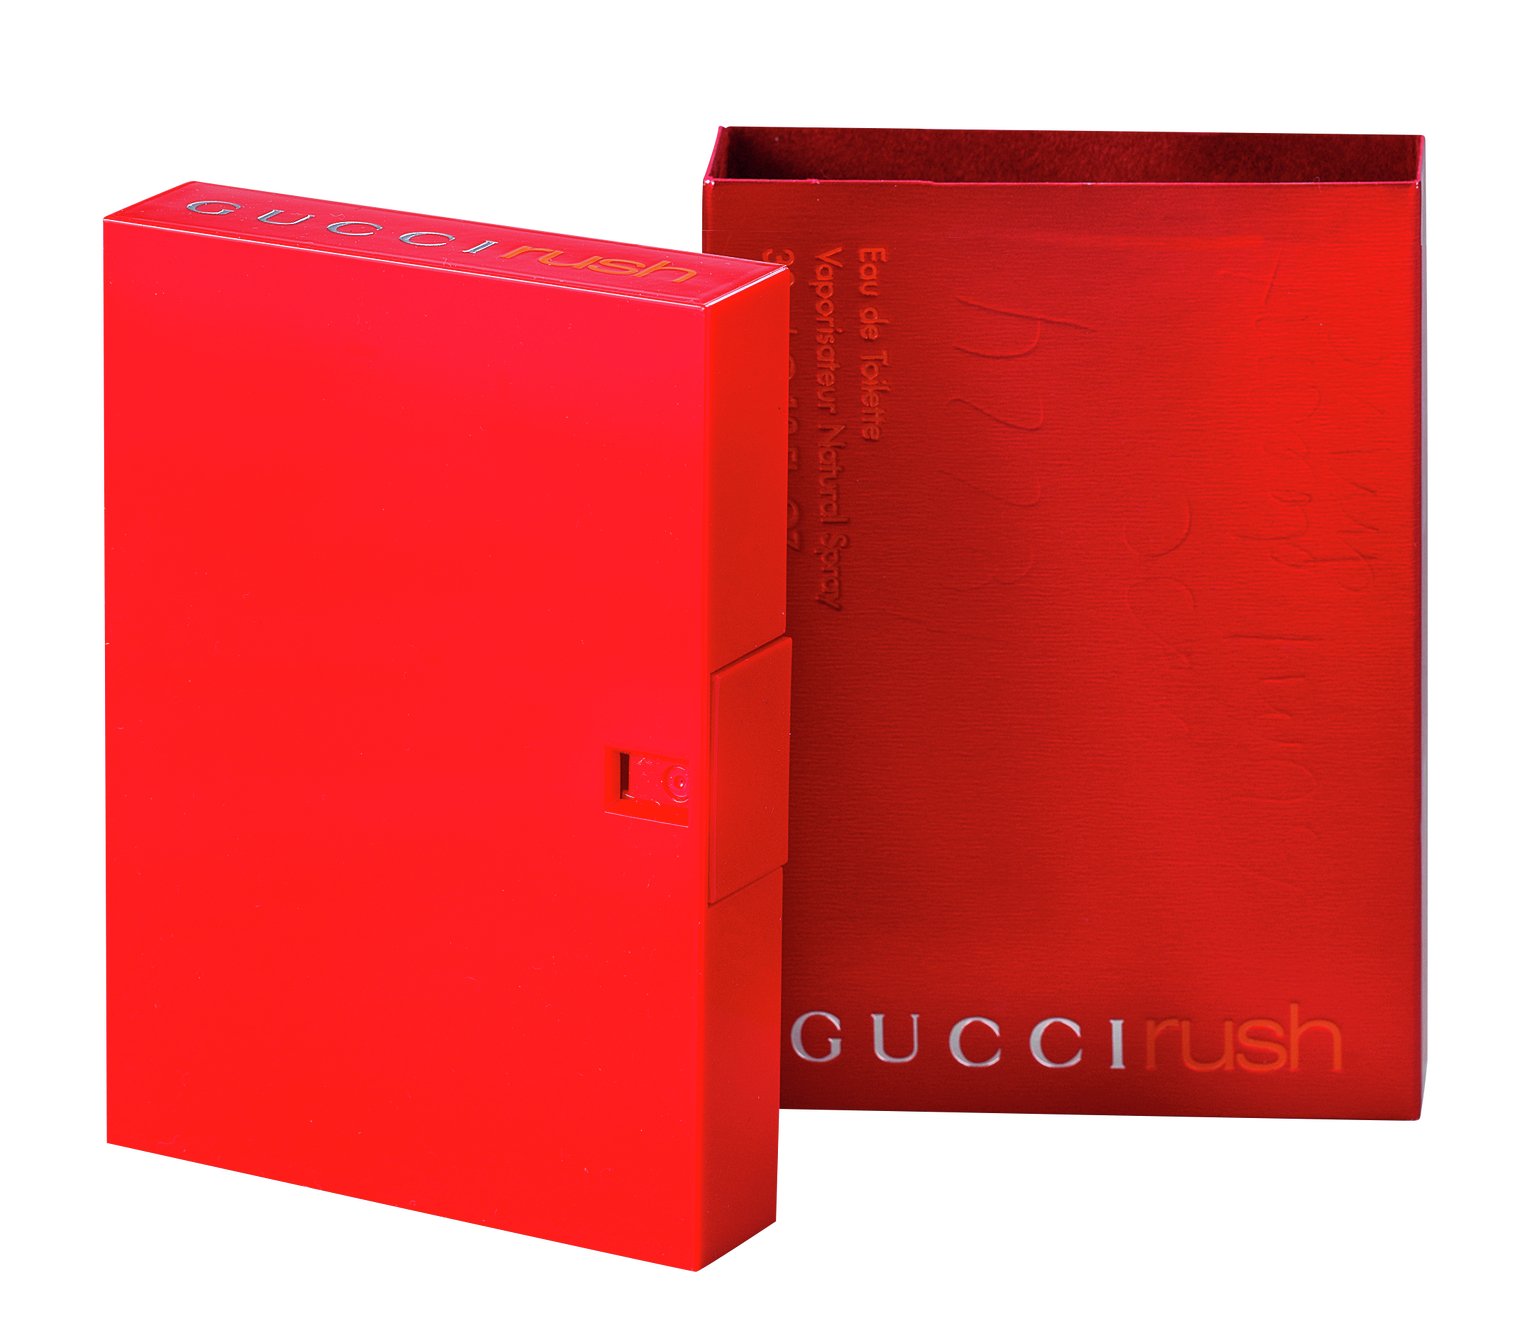 Buy Gucci Rush Eau de Toilette - 50ml 